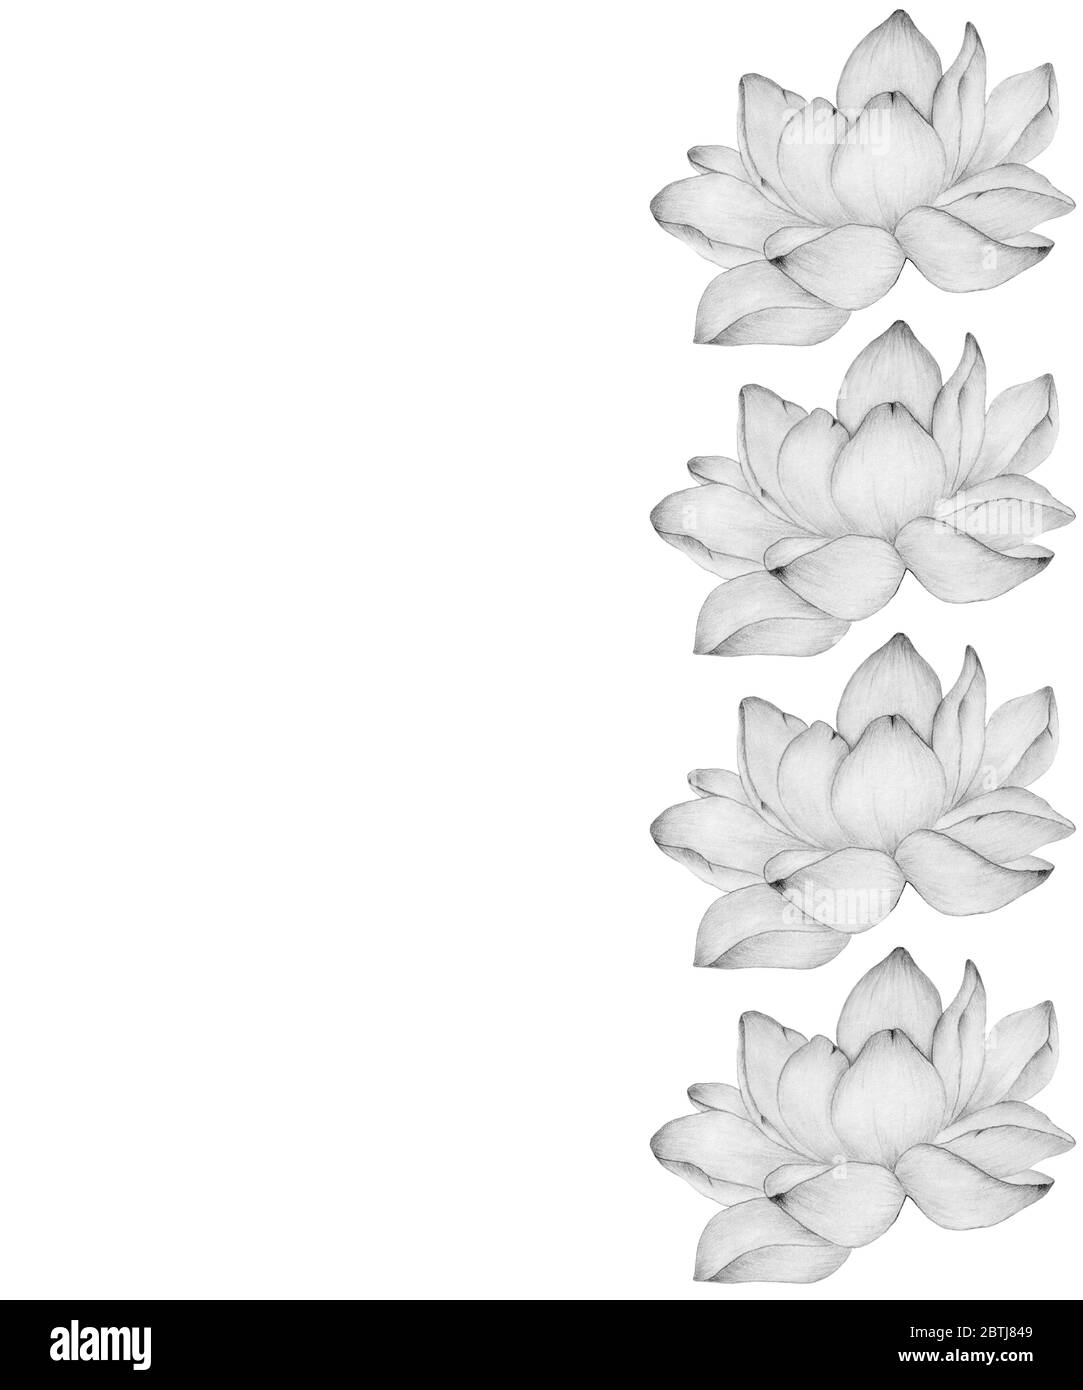 Rahmen mit monochromen Lotusblumen- und Kopierraum, Blumenkarte Dekoration mit blühenden Seerosenblumen, realistische Bleistift Zeichnung Illustration Stockfoto